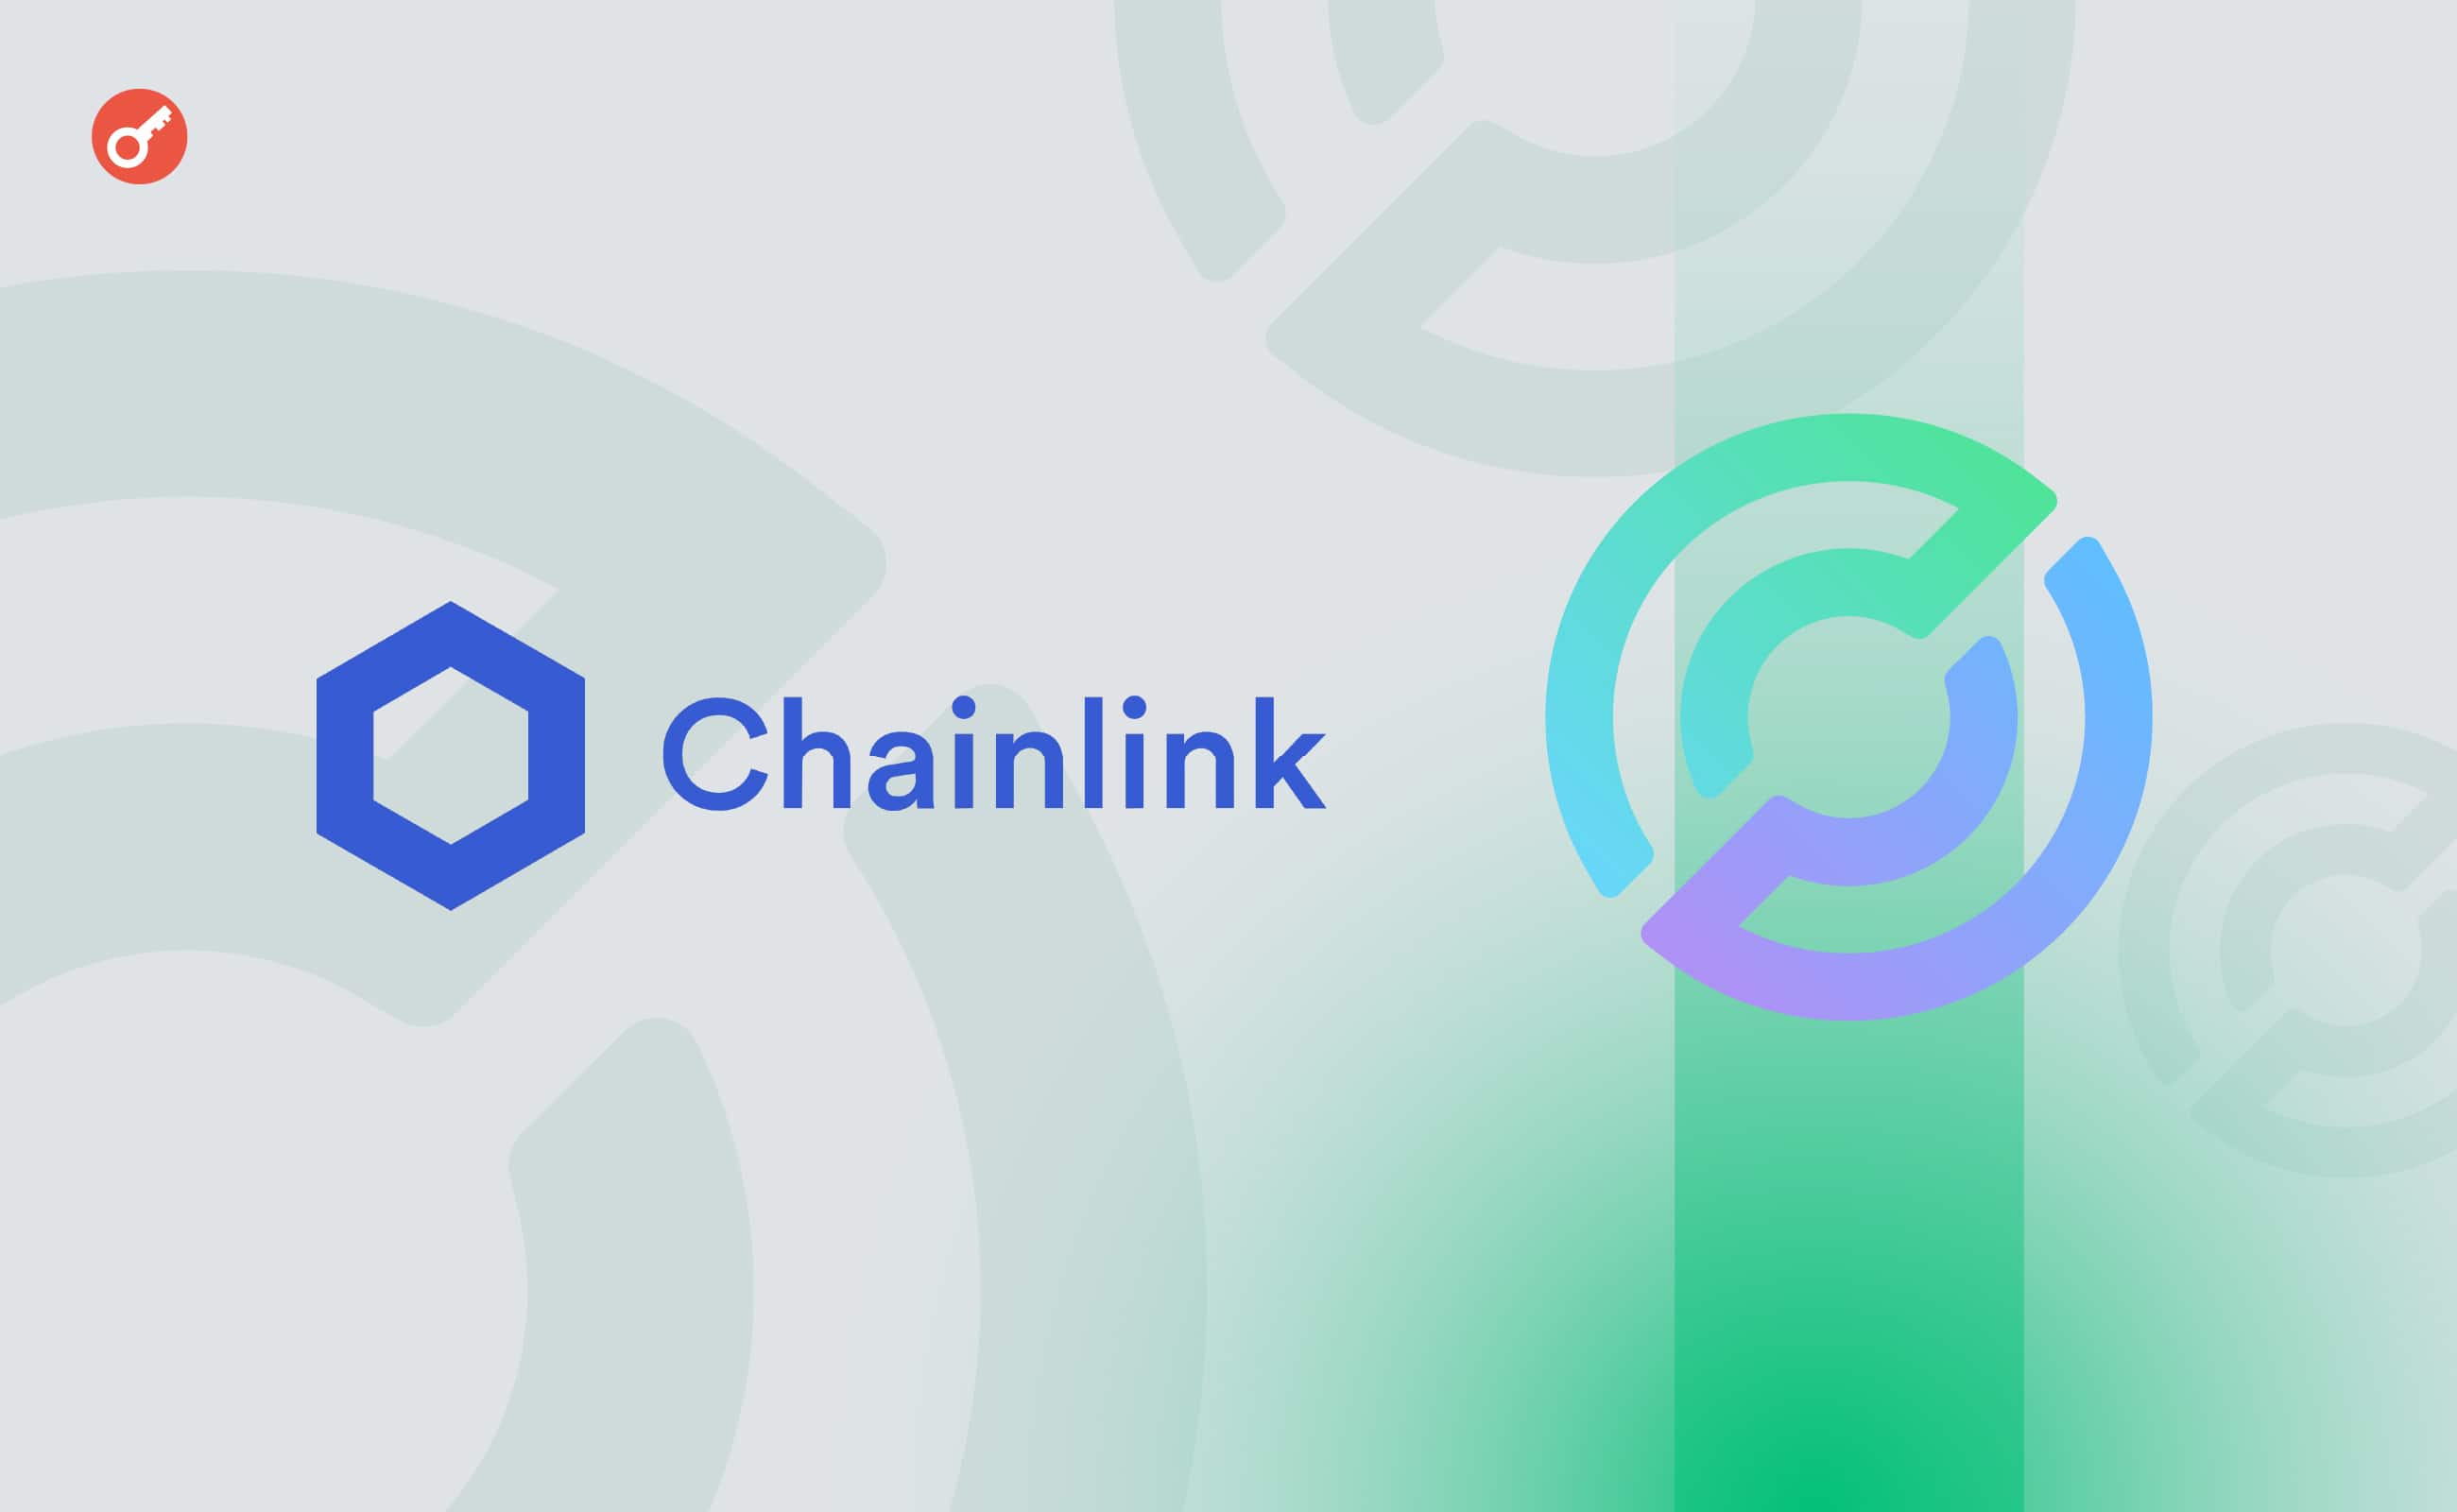 Chainlink интегрировала протокол CCTP от Circle для безопасных переводов USDC. Заглавный коллаж новости.